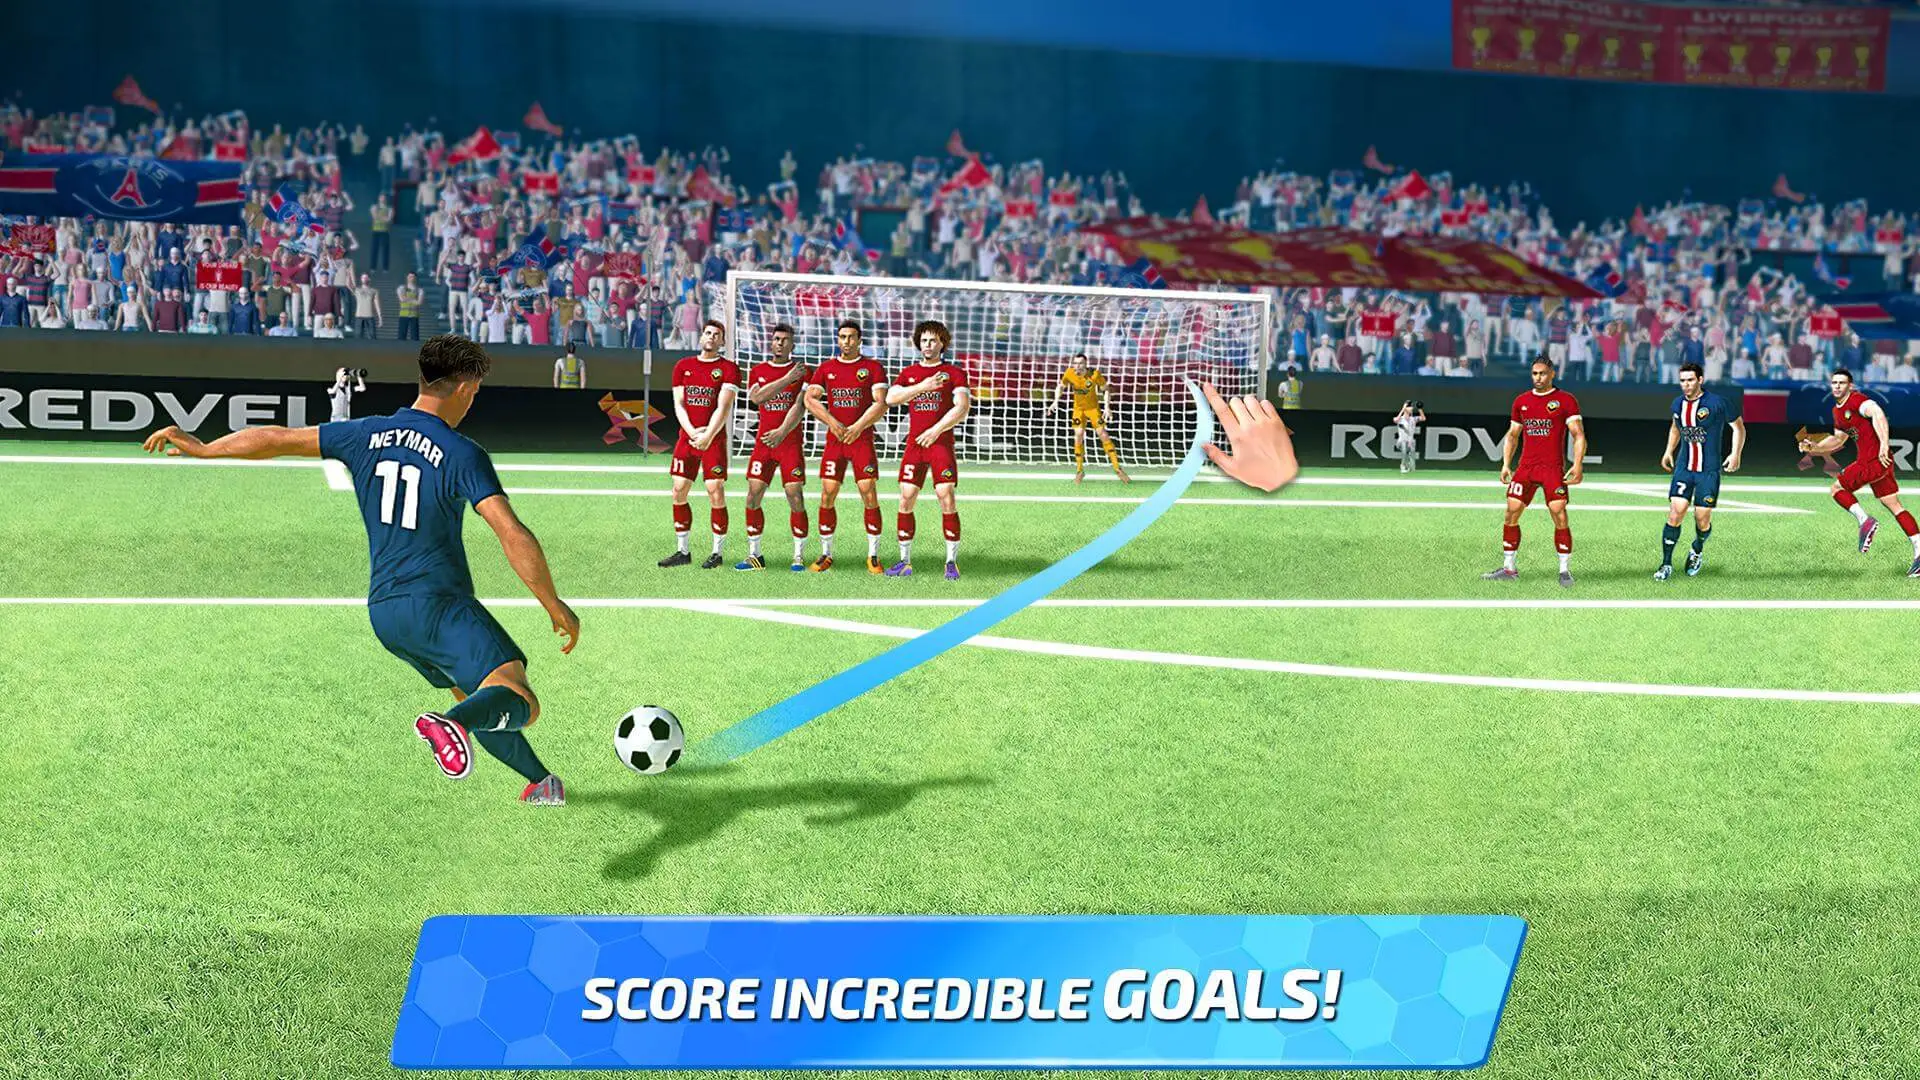 Baixar Soccer Manager 2020 - Jogos de Futebol Online para PC - LDPlayer